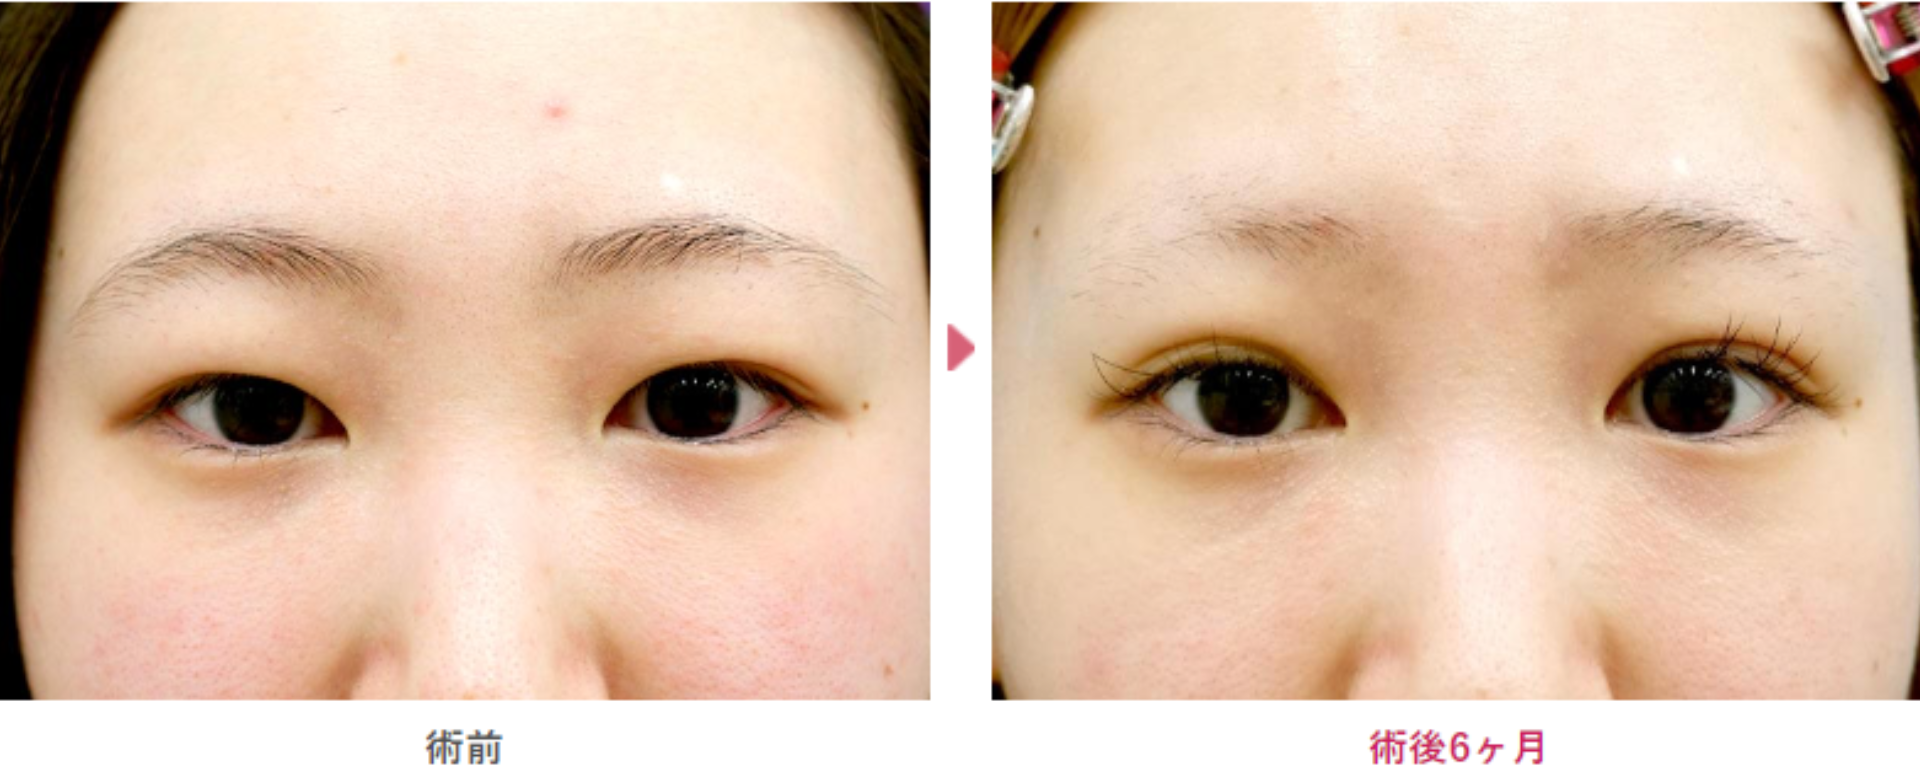 二重切開の術前と術後6ヶ月の見た目の変化を表す症例写真